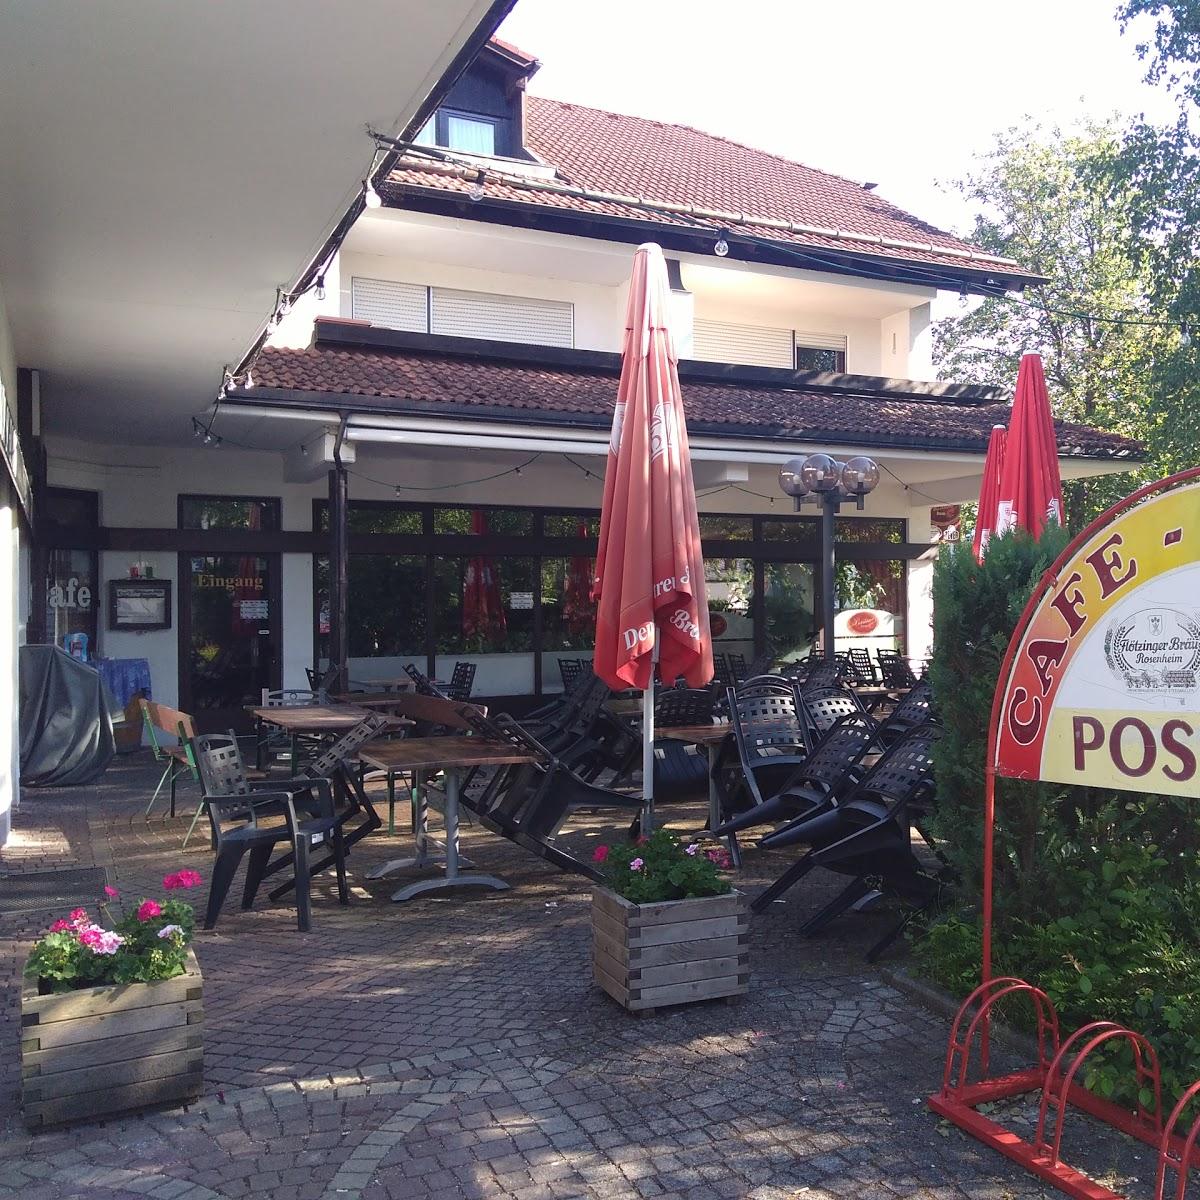 Restaurant "Ristorante Positano" in  Rosenheim